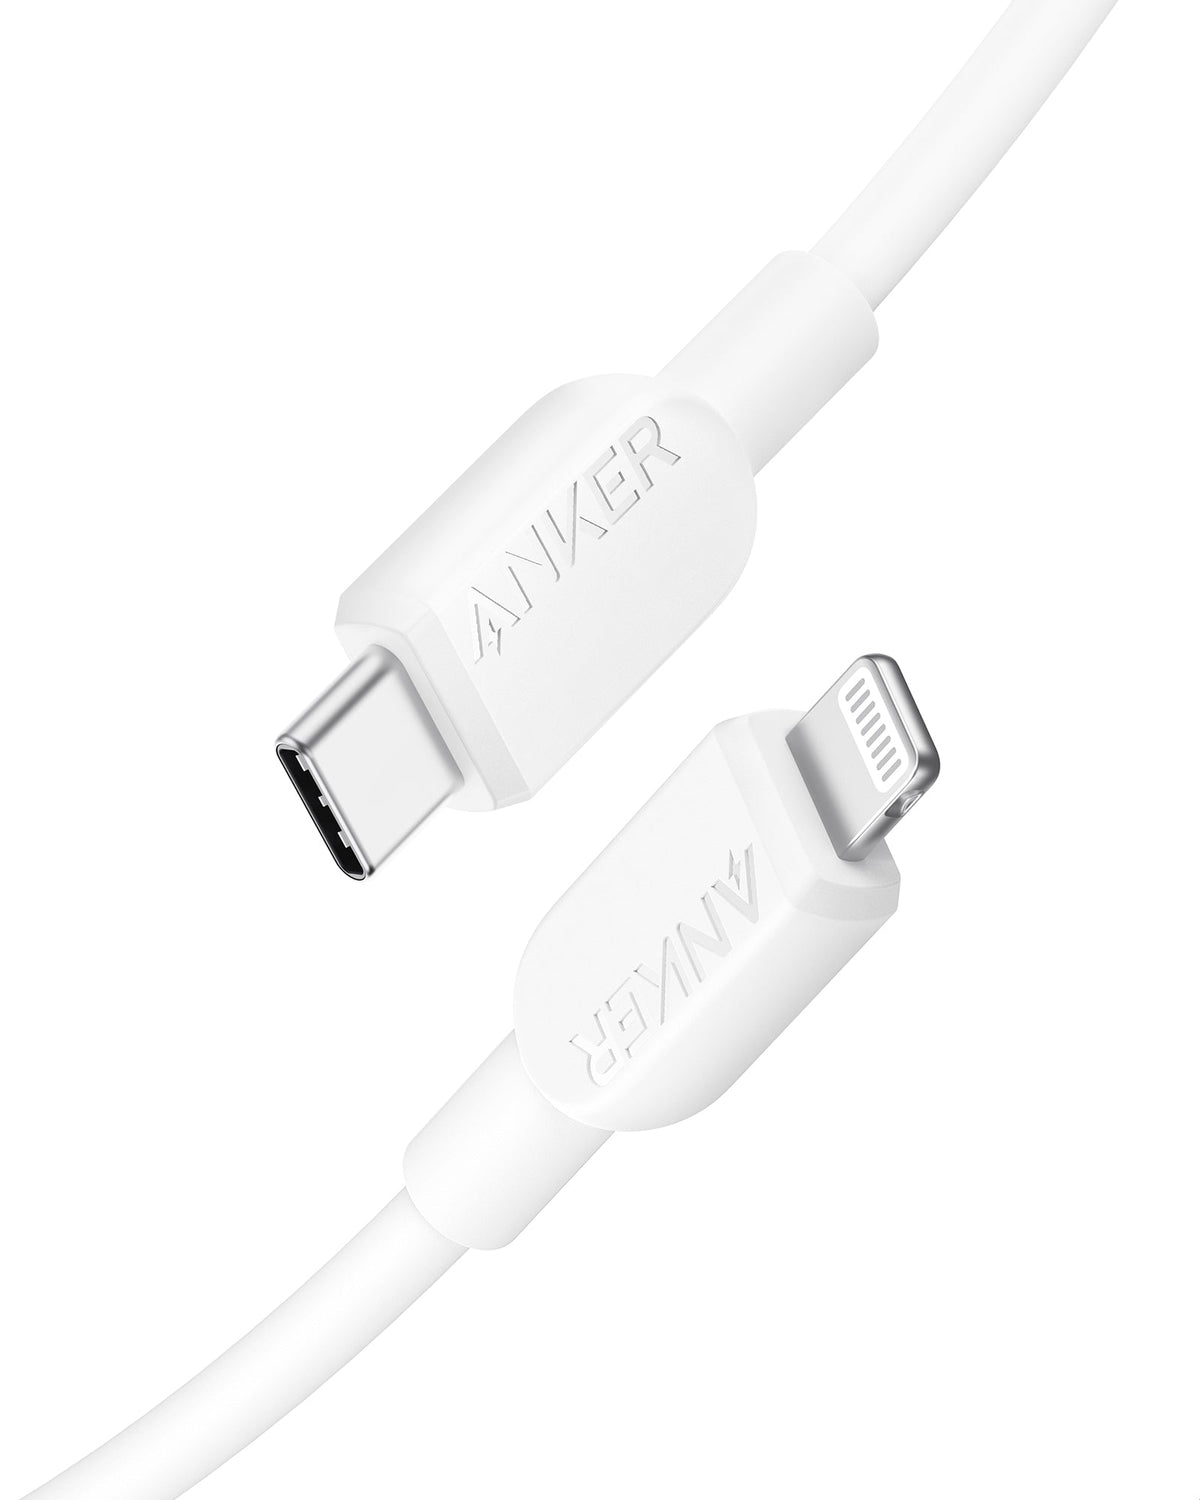 Anker &lt;b&gt;321&lt;/b&gt; USB-C to Lightning Cable (3 ft / 6 ft)